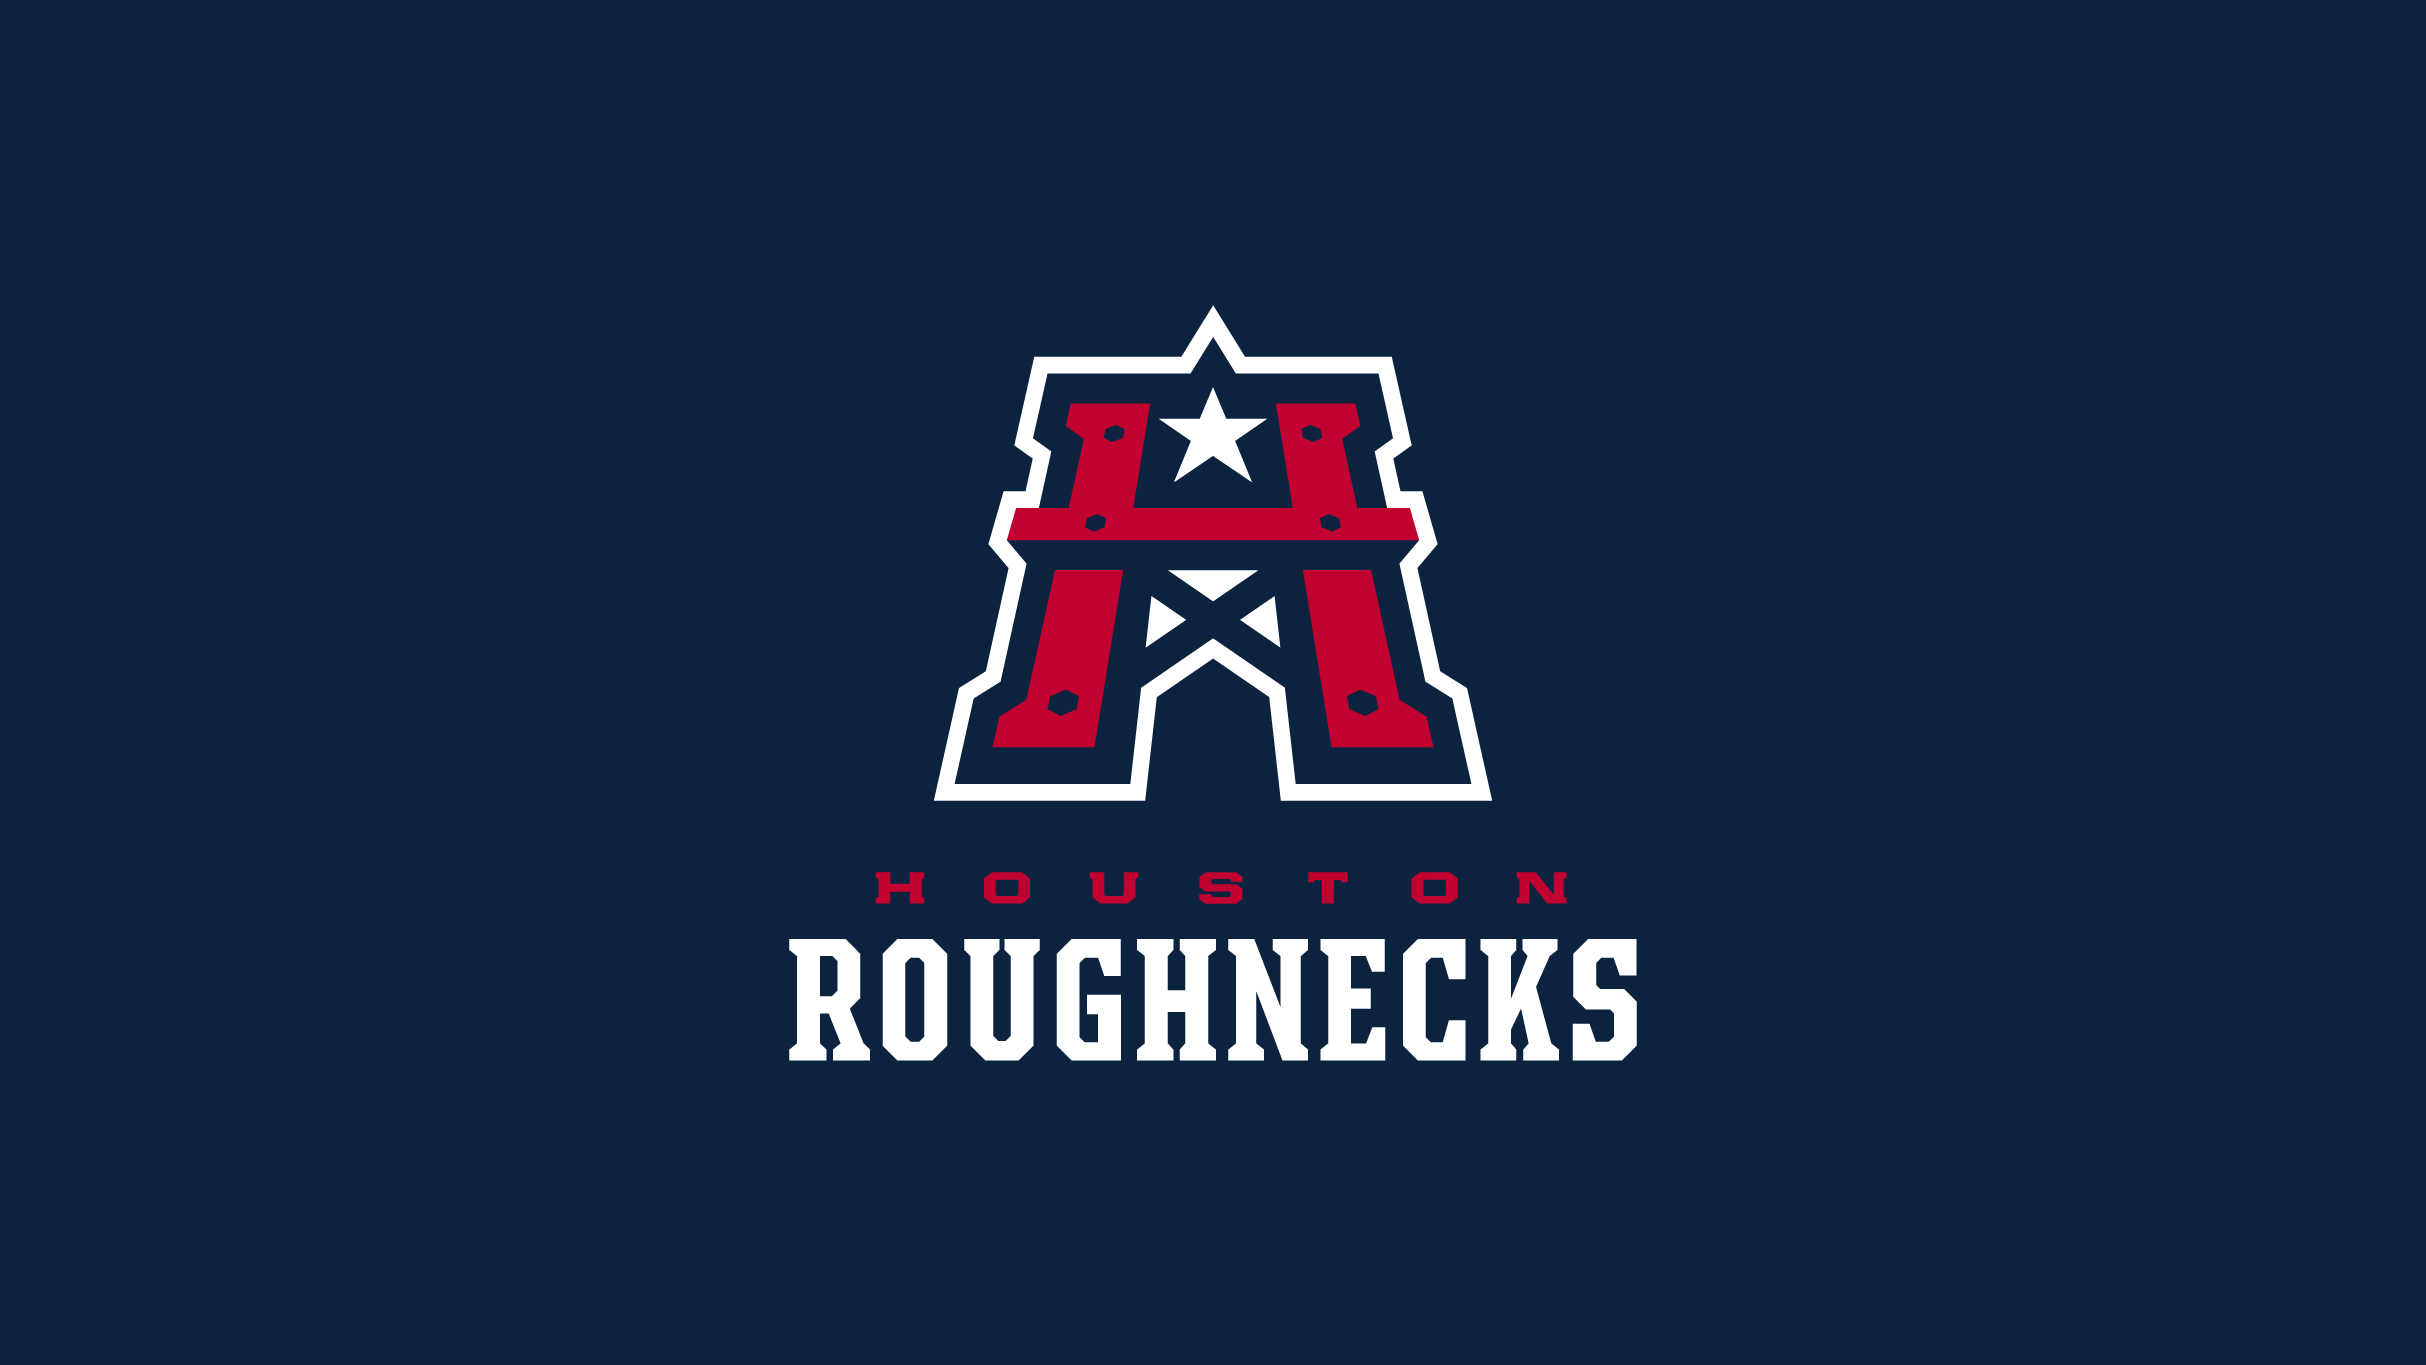 Houston Roughnecks vs. Arlington Renegades at Rice Stadium